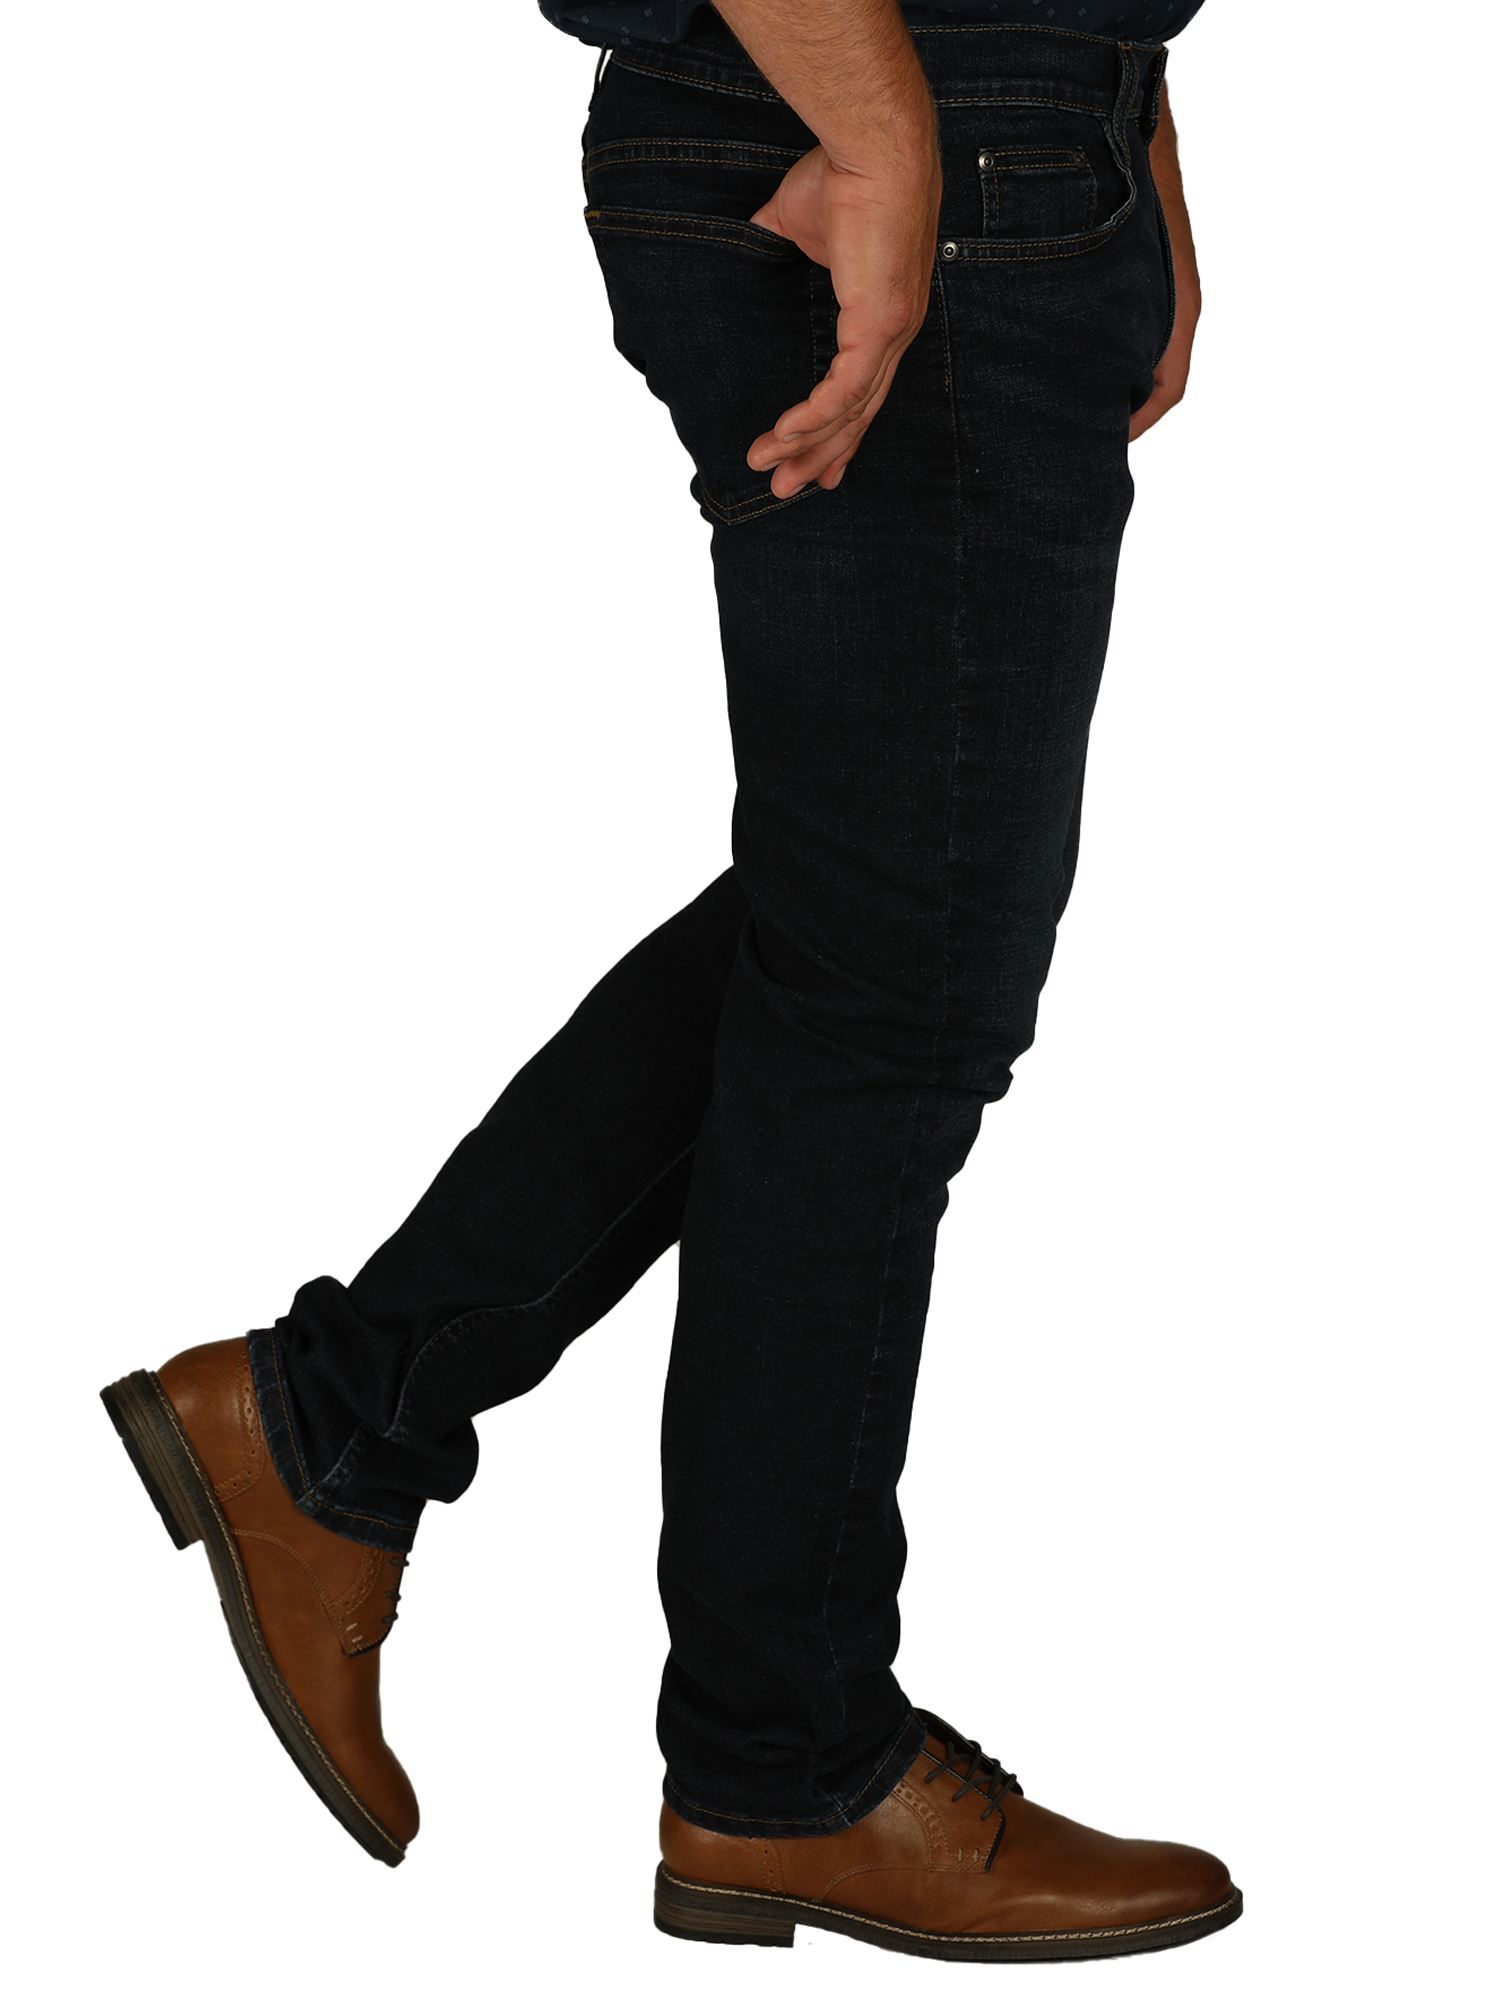 George Men's Slim Fit Jeans - image 3 of 5